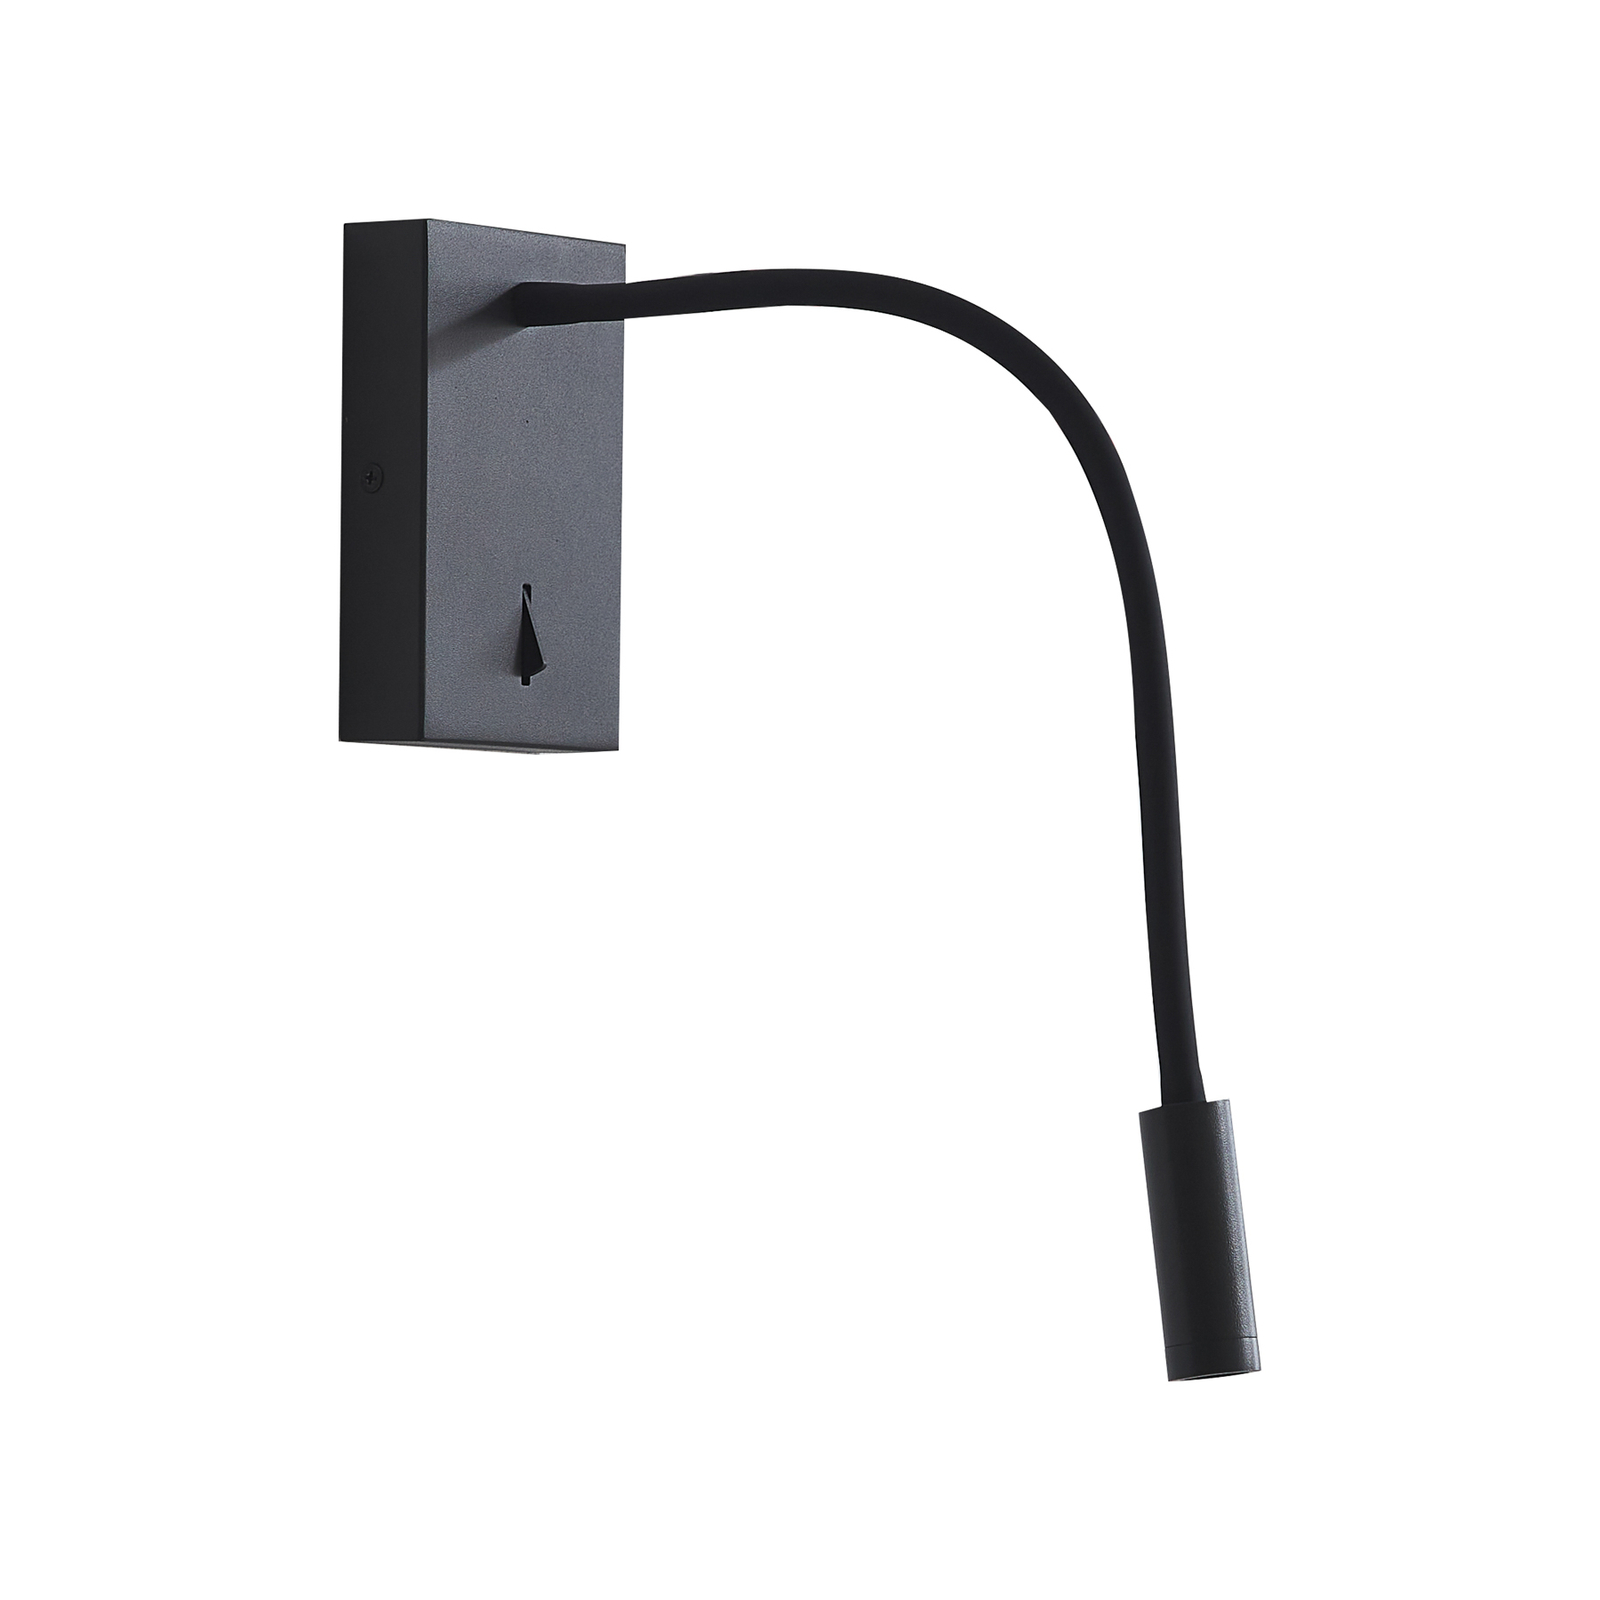 Lucande LED-lukuvalaisin Hetti, musta, metallia, 14 cm korkea